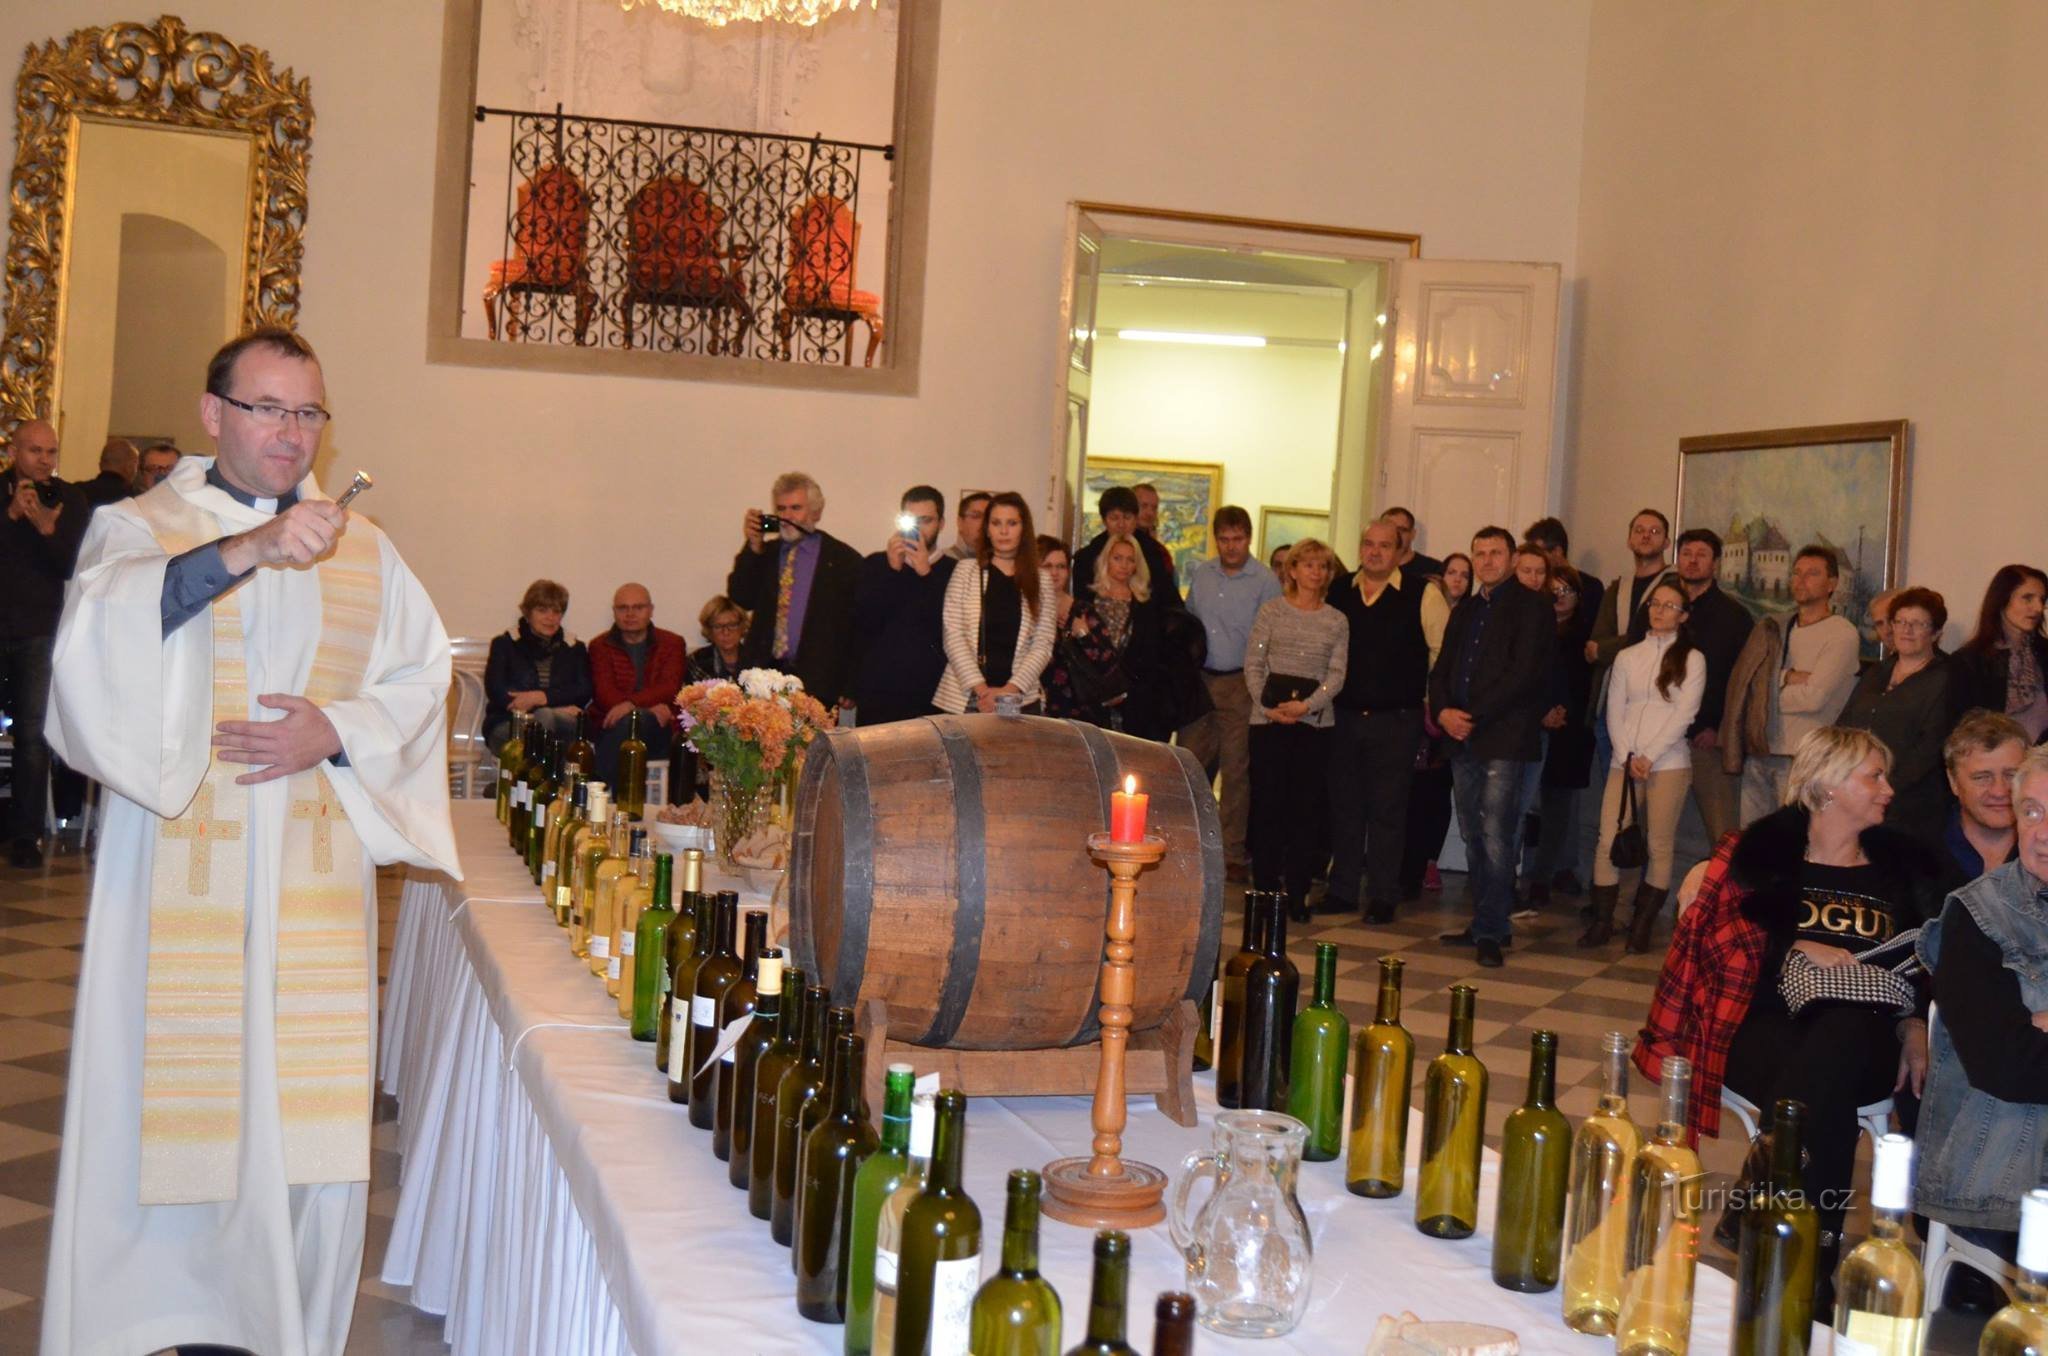 Svatomartinský Mikulov kutsuu hanhierikoisuuksiin, nuoriin viineihin ja suureen osaan kulttuuria